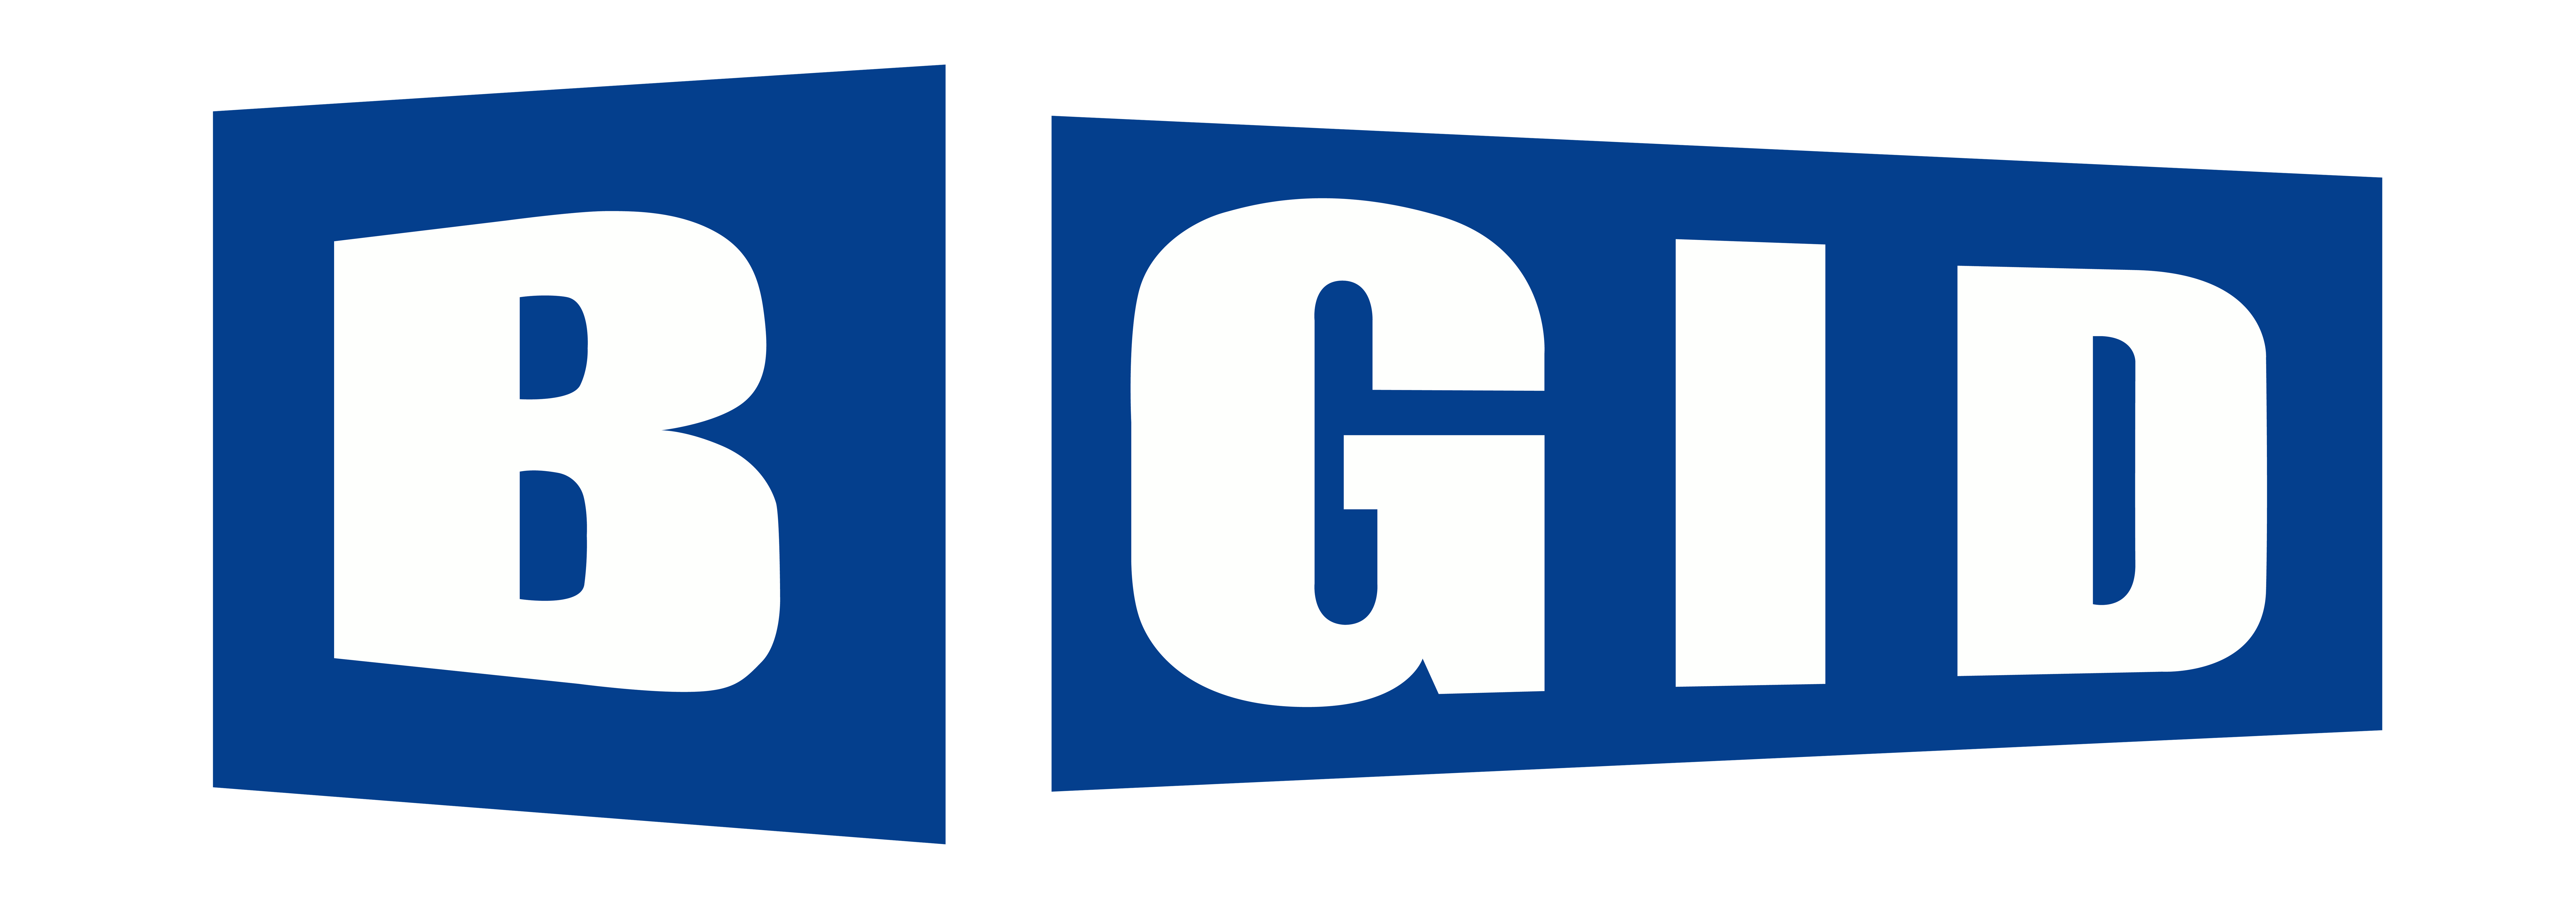 BGID High Quality Logo -01